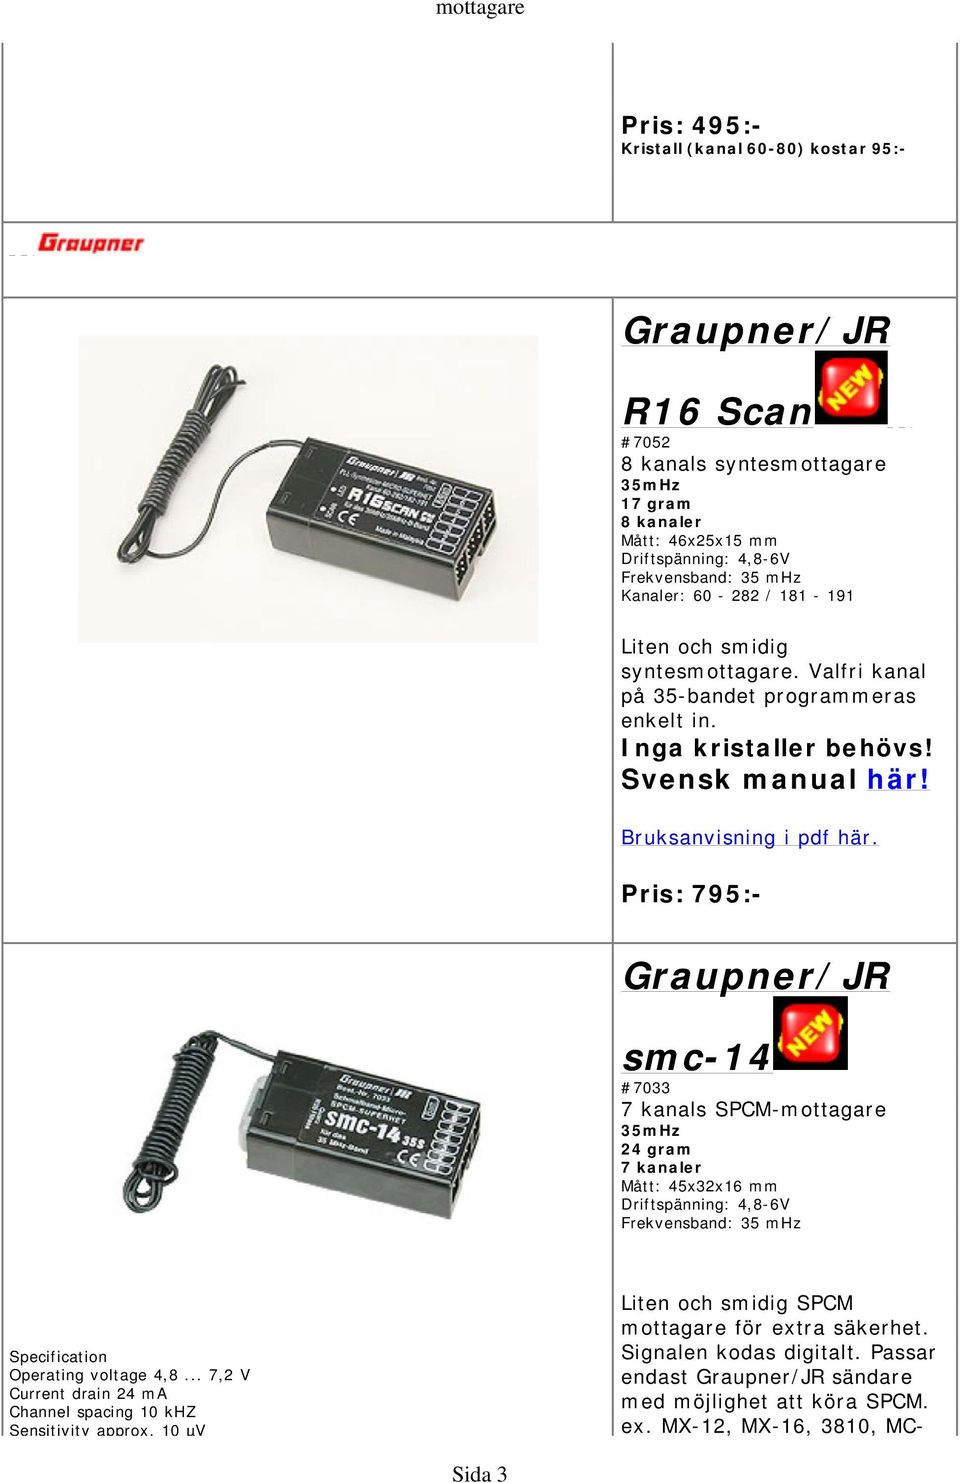 Pris: 795:- Graupner/JR smc-14 #7033 7 kanals SPCM-mottagare 35mHz 24 gram 7 kanaler Mått: 45x32x16 mm Driftspänning: 4,8-6V Frekvensband: 35 mhz Specification Operating voltage 4,8.